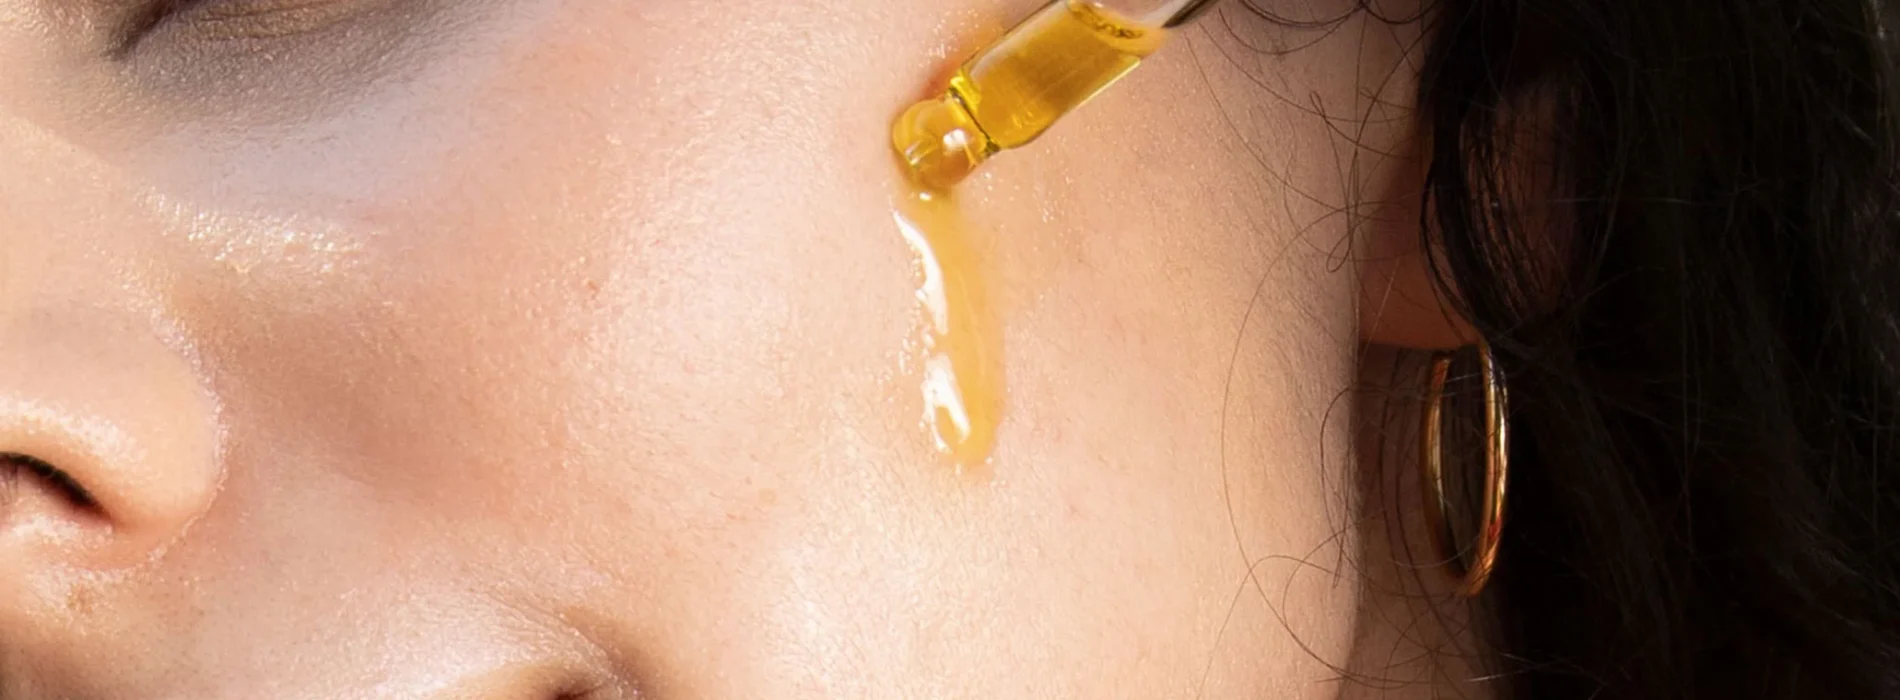 Sekrety naturalnych olejków: od pielęgnacji do masażu twarzy